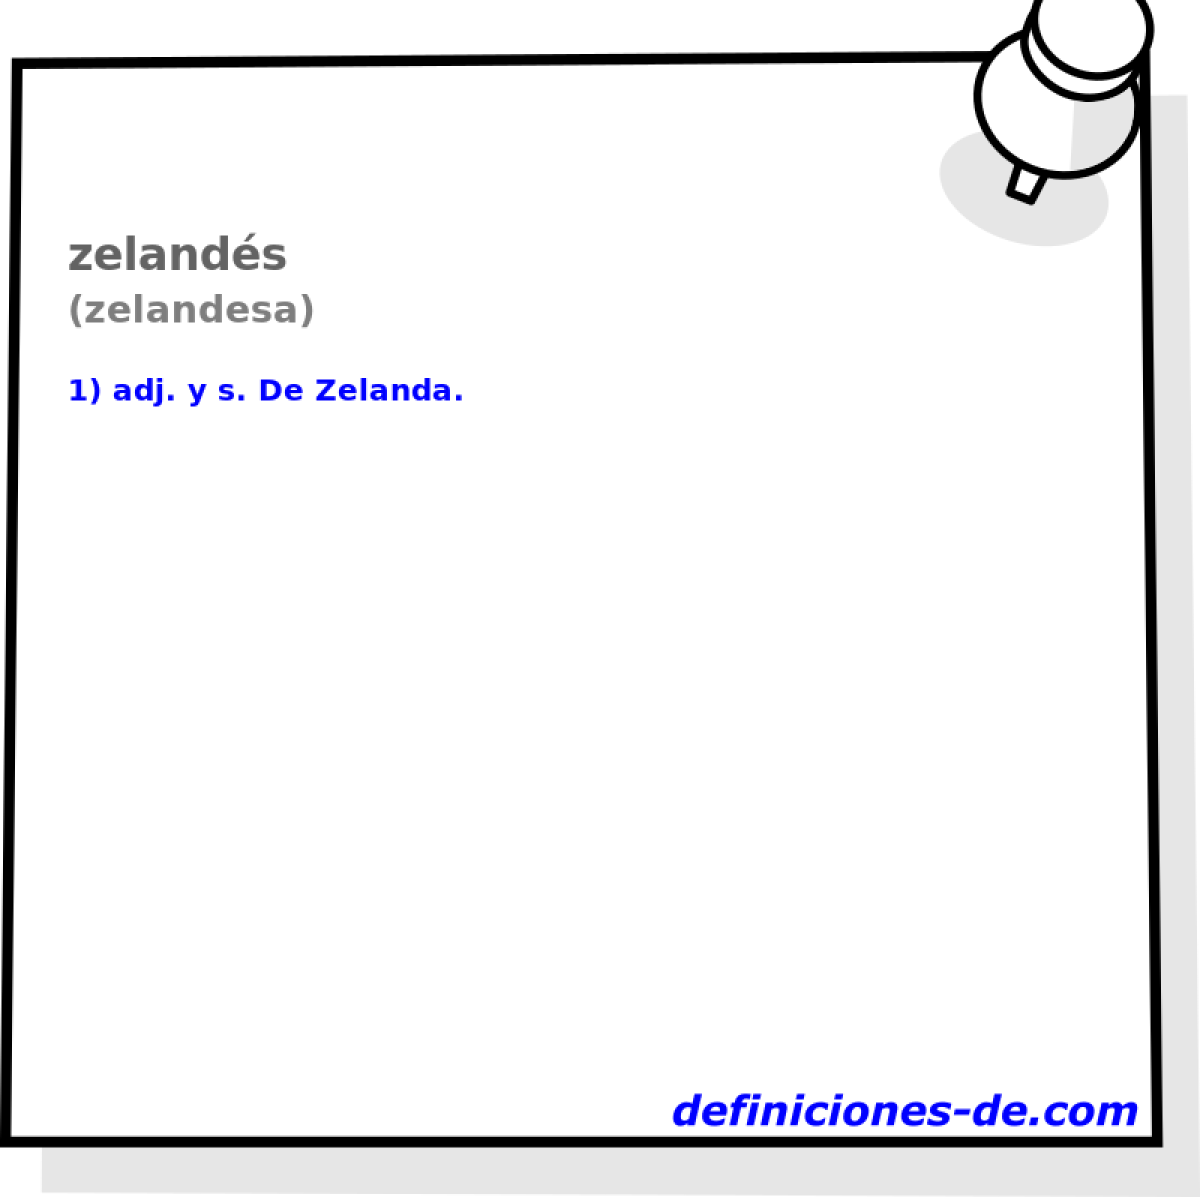 zelands (zelandesa)